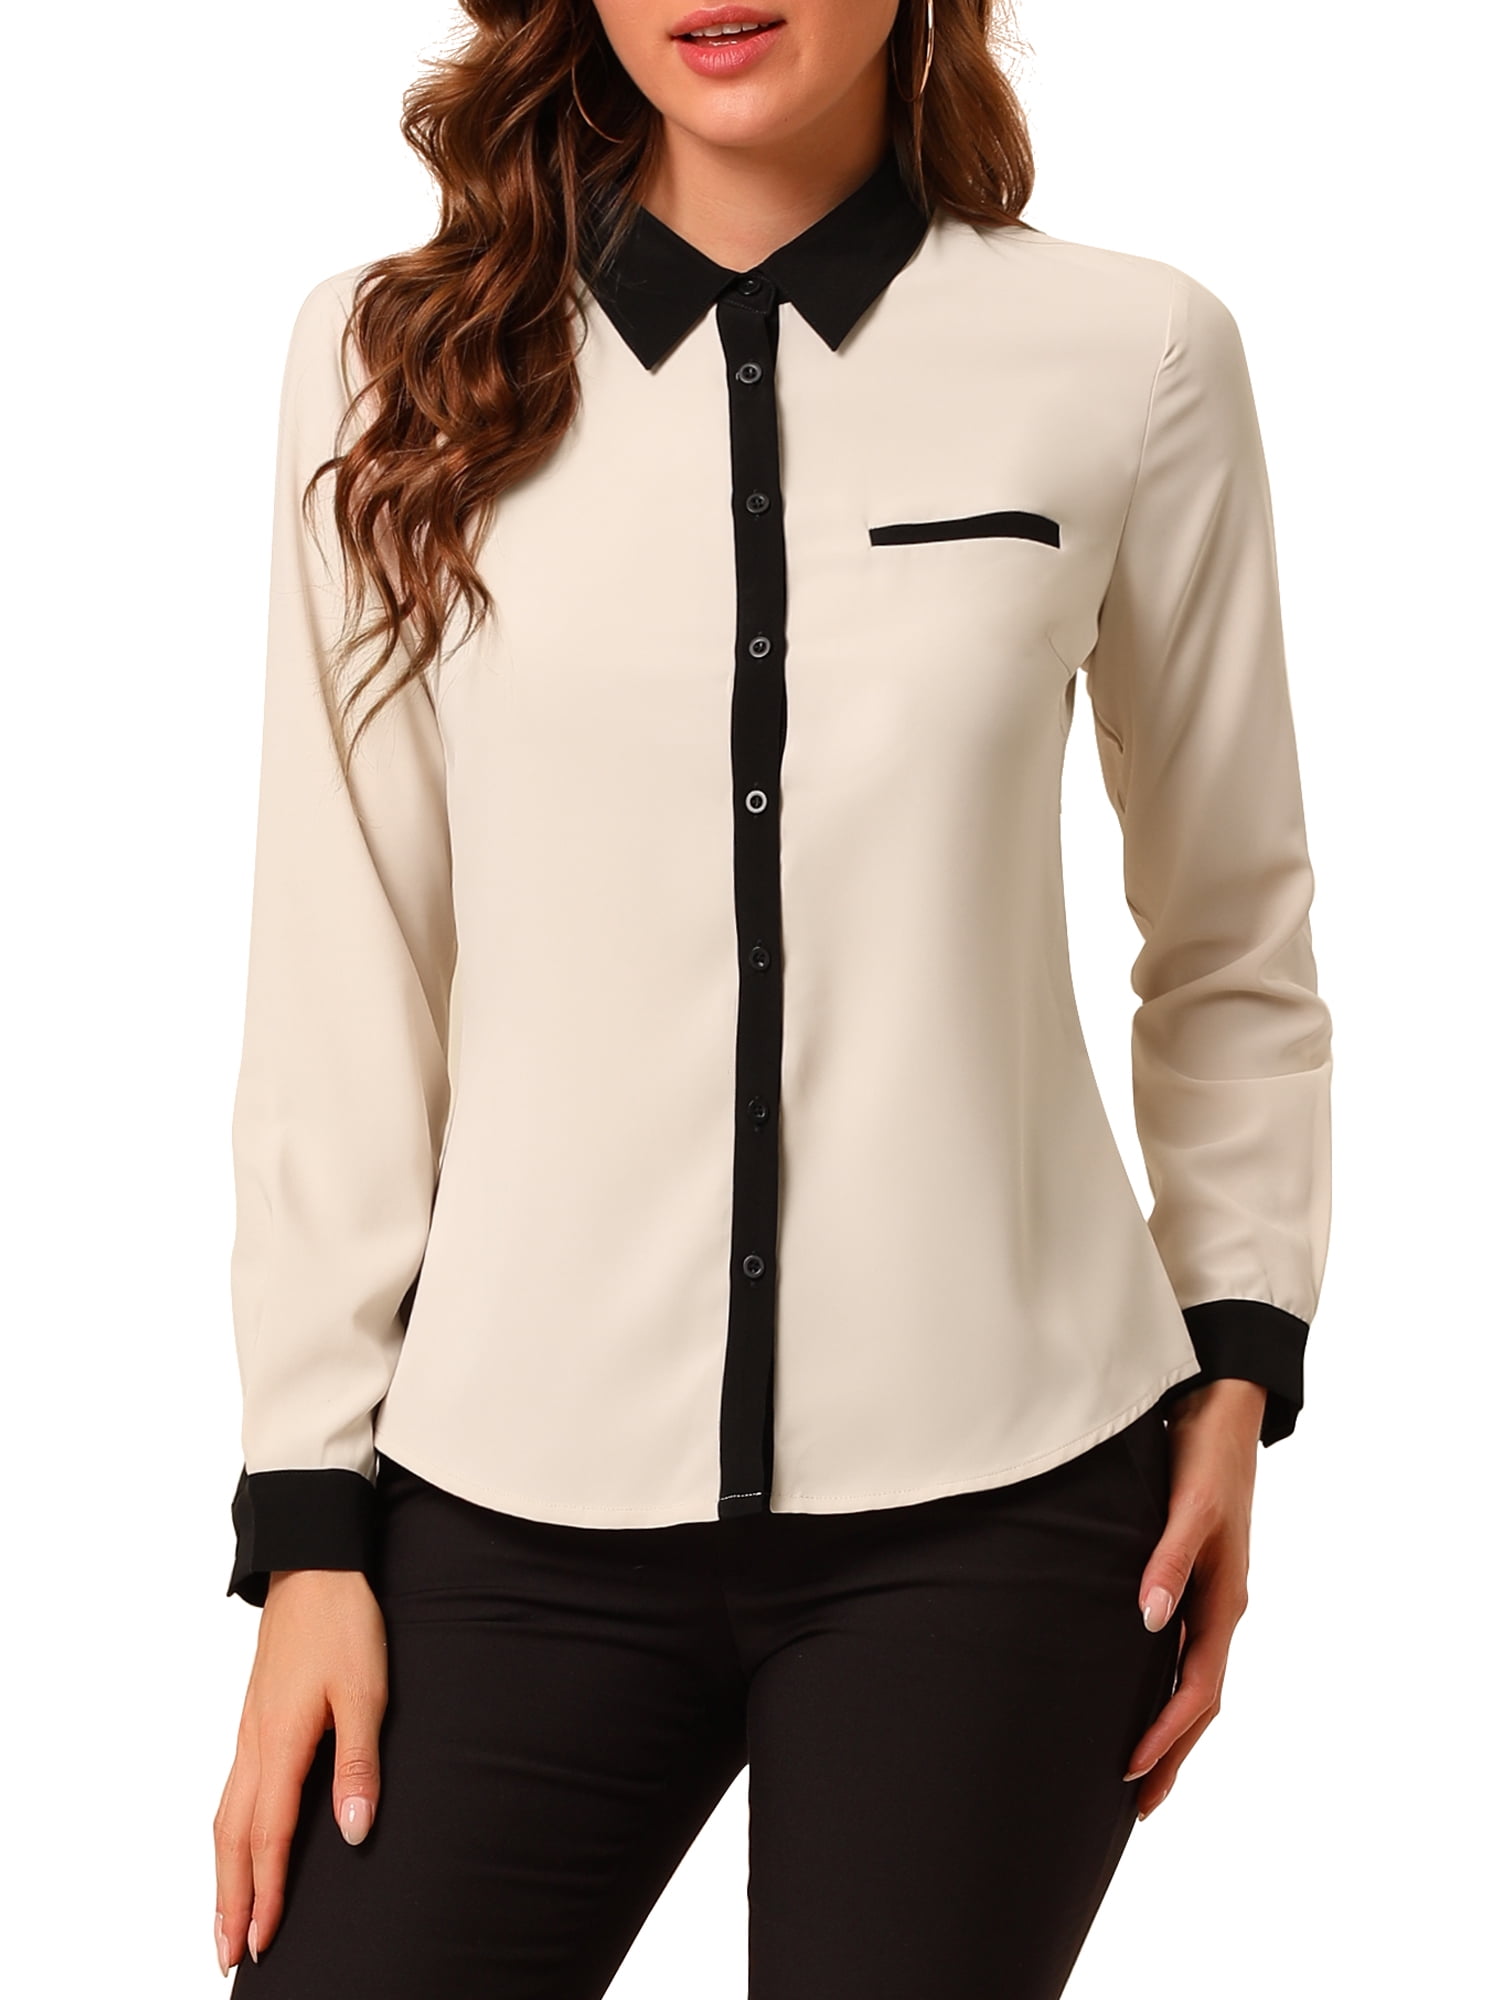 Unique Bargains Women's Color Block Button Down Long Sleeve Work Shirt